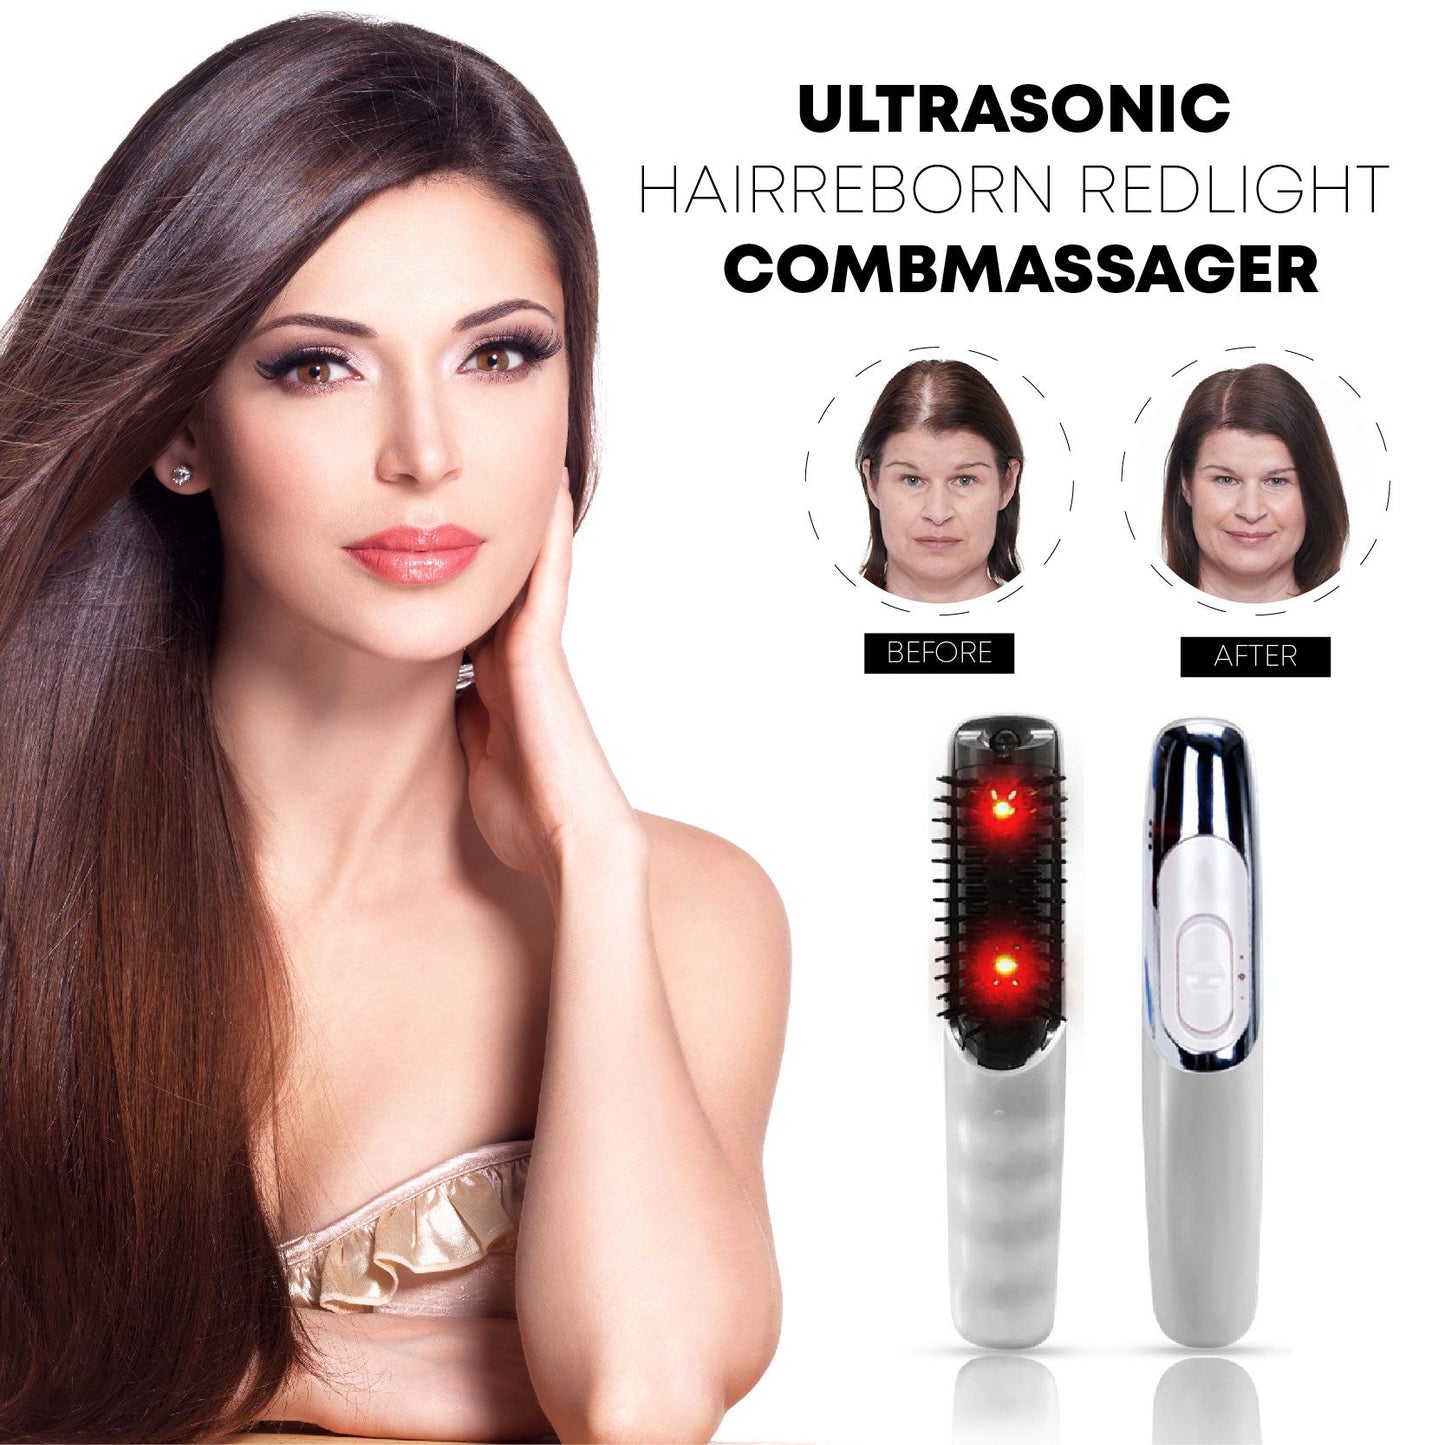 Ultrasonic HairReborn RedLight CombMassager